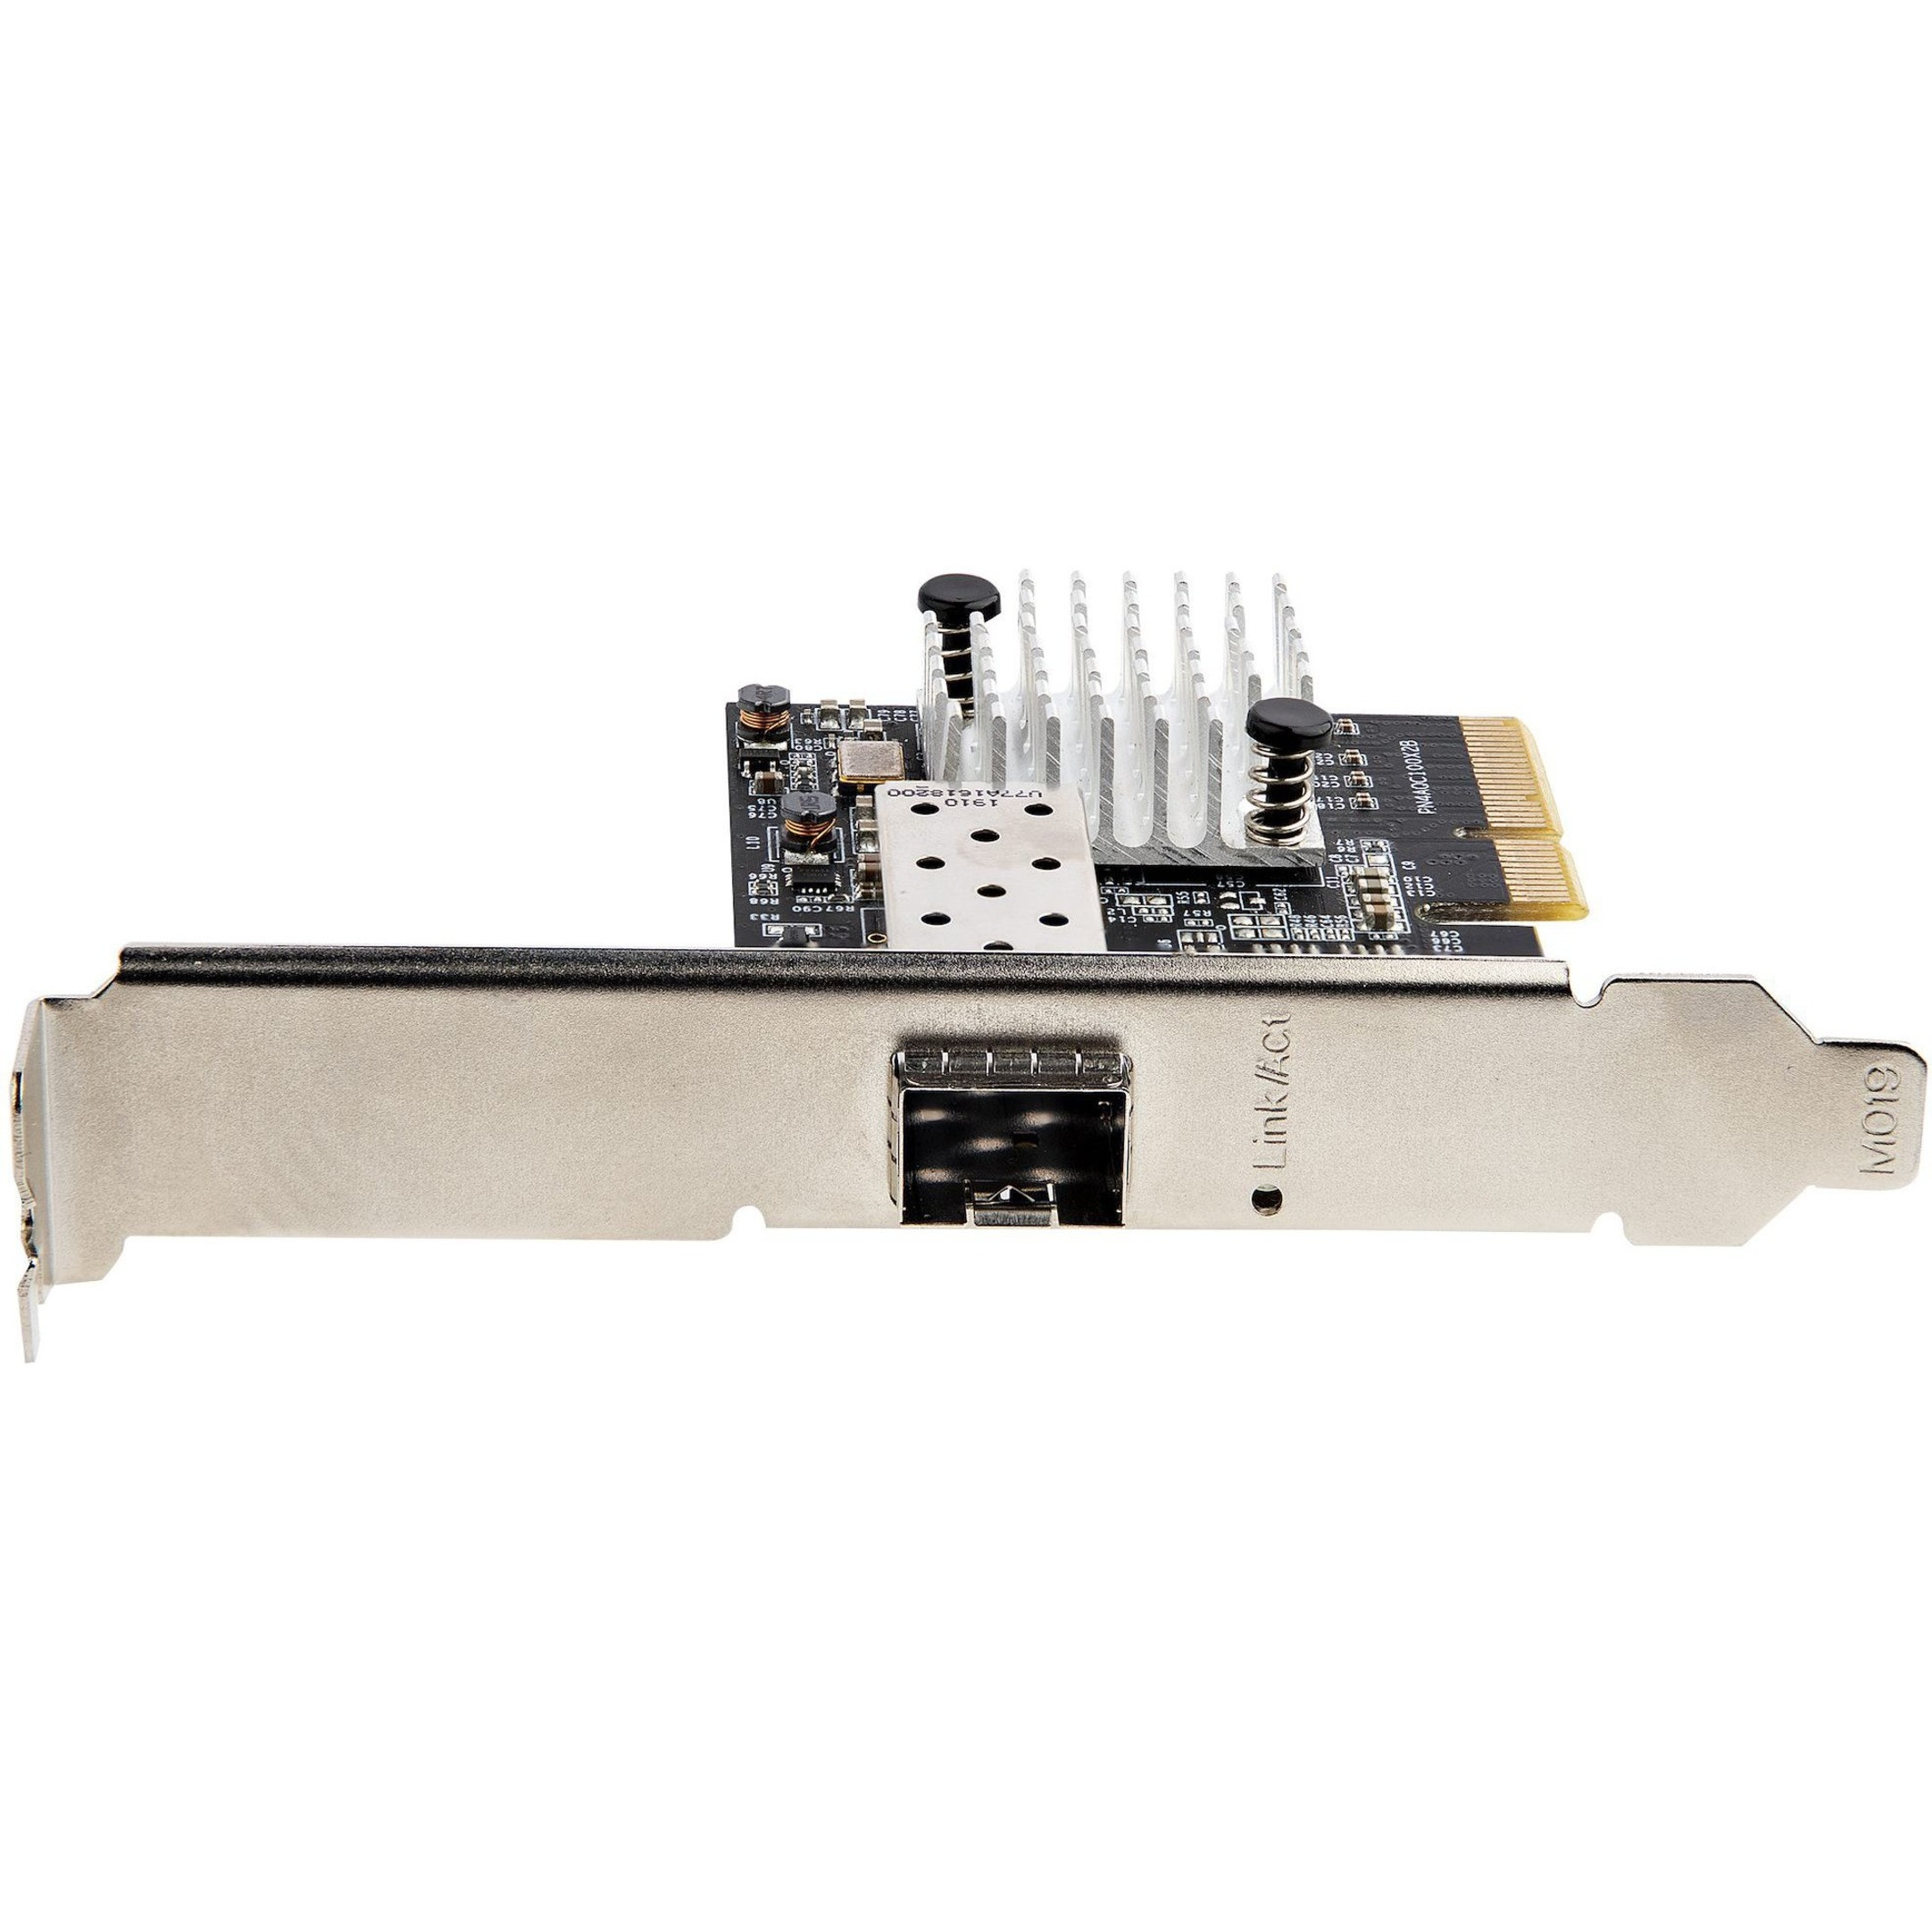 Startech .com 10G PCIe SFP+ Card, Single SFP+ Port Network Adapter